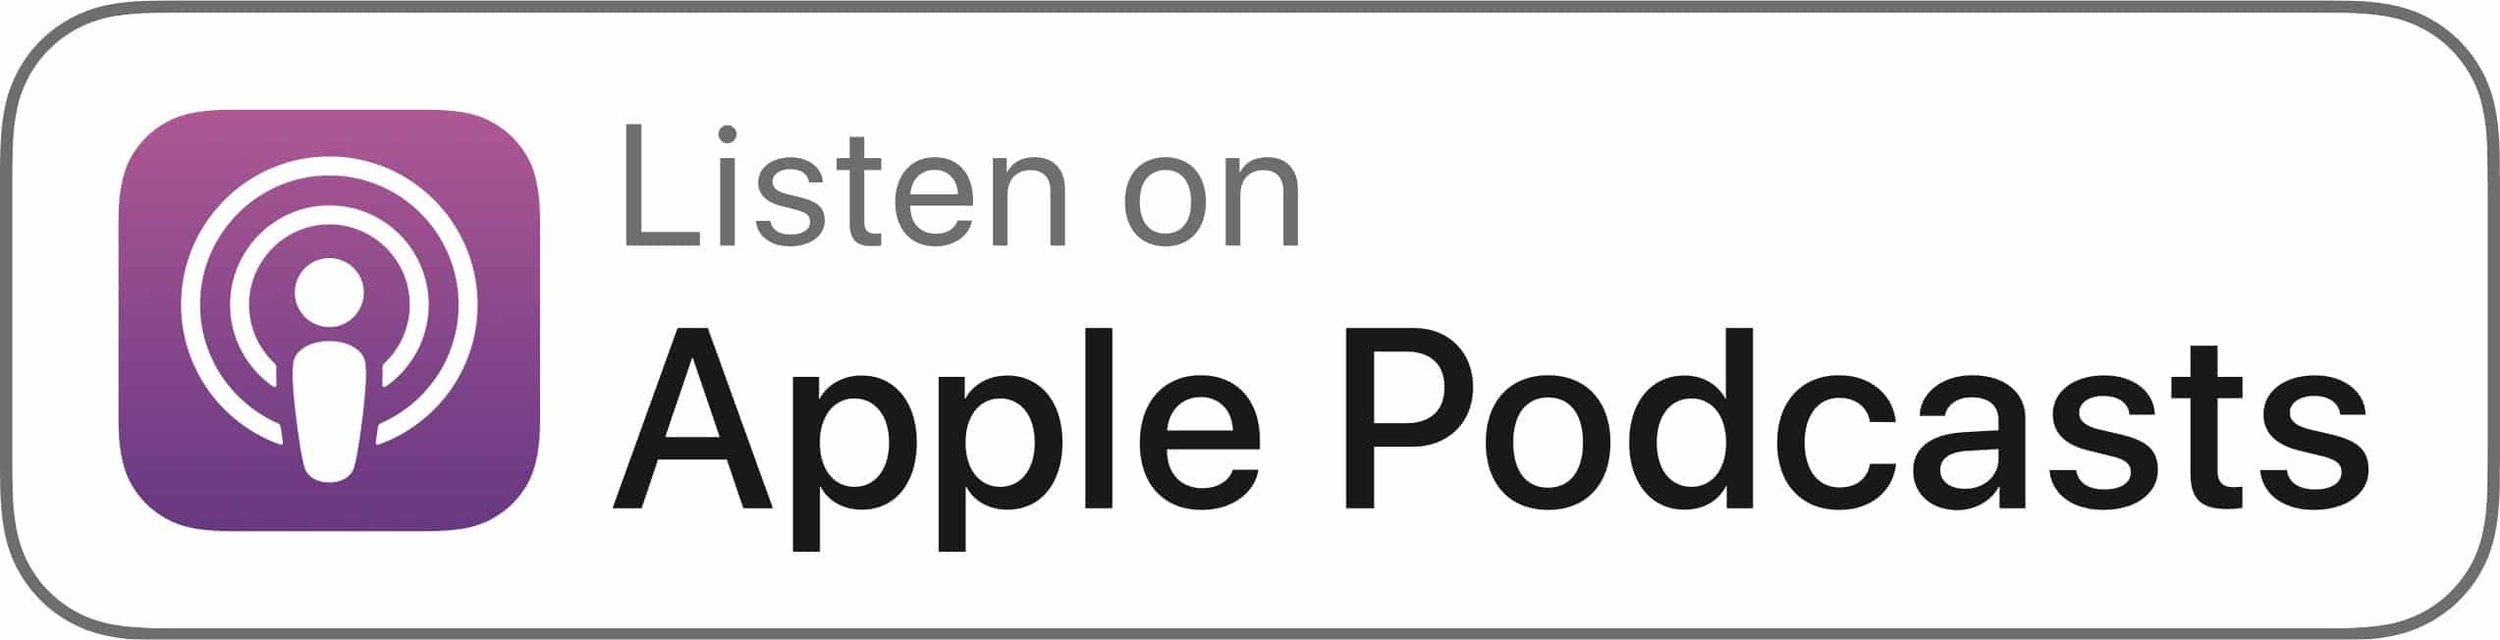 Apple Podcasts (Copy) (Copy) (Copy) (Copy) (Copy) (Copy) (Copy) (Copy) (Copy)